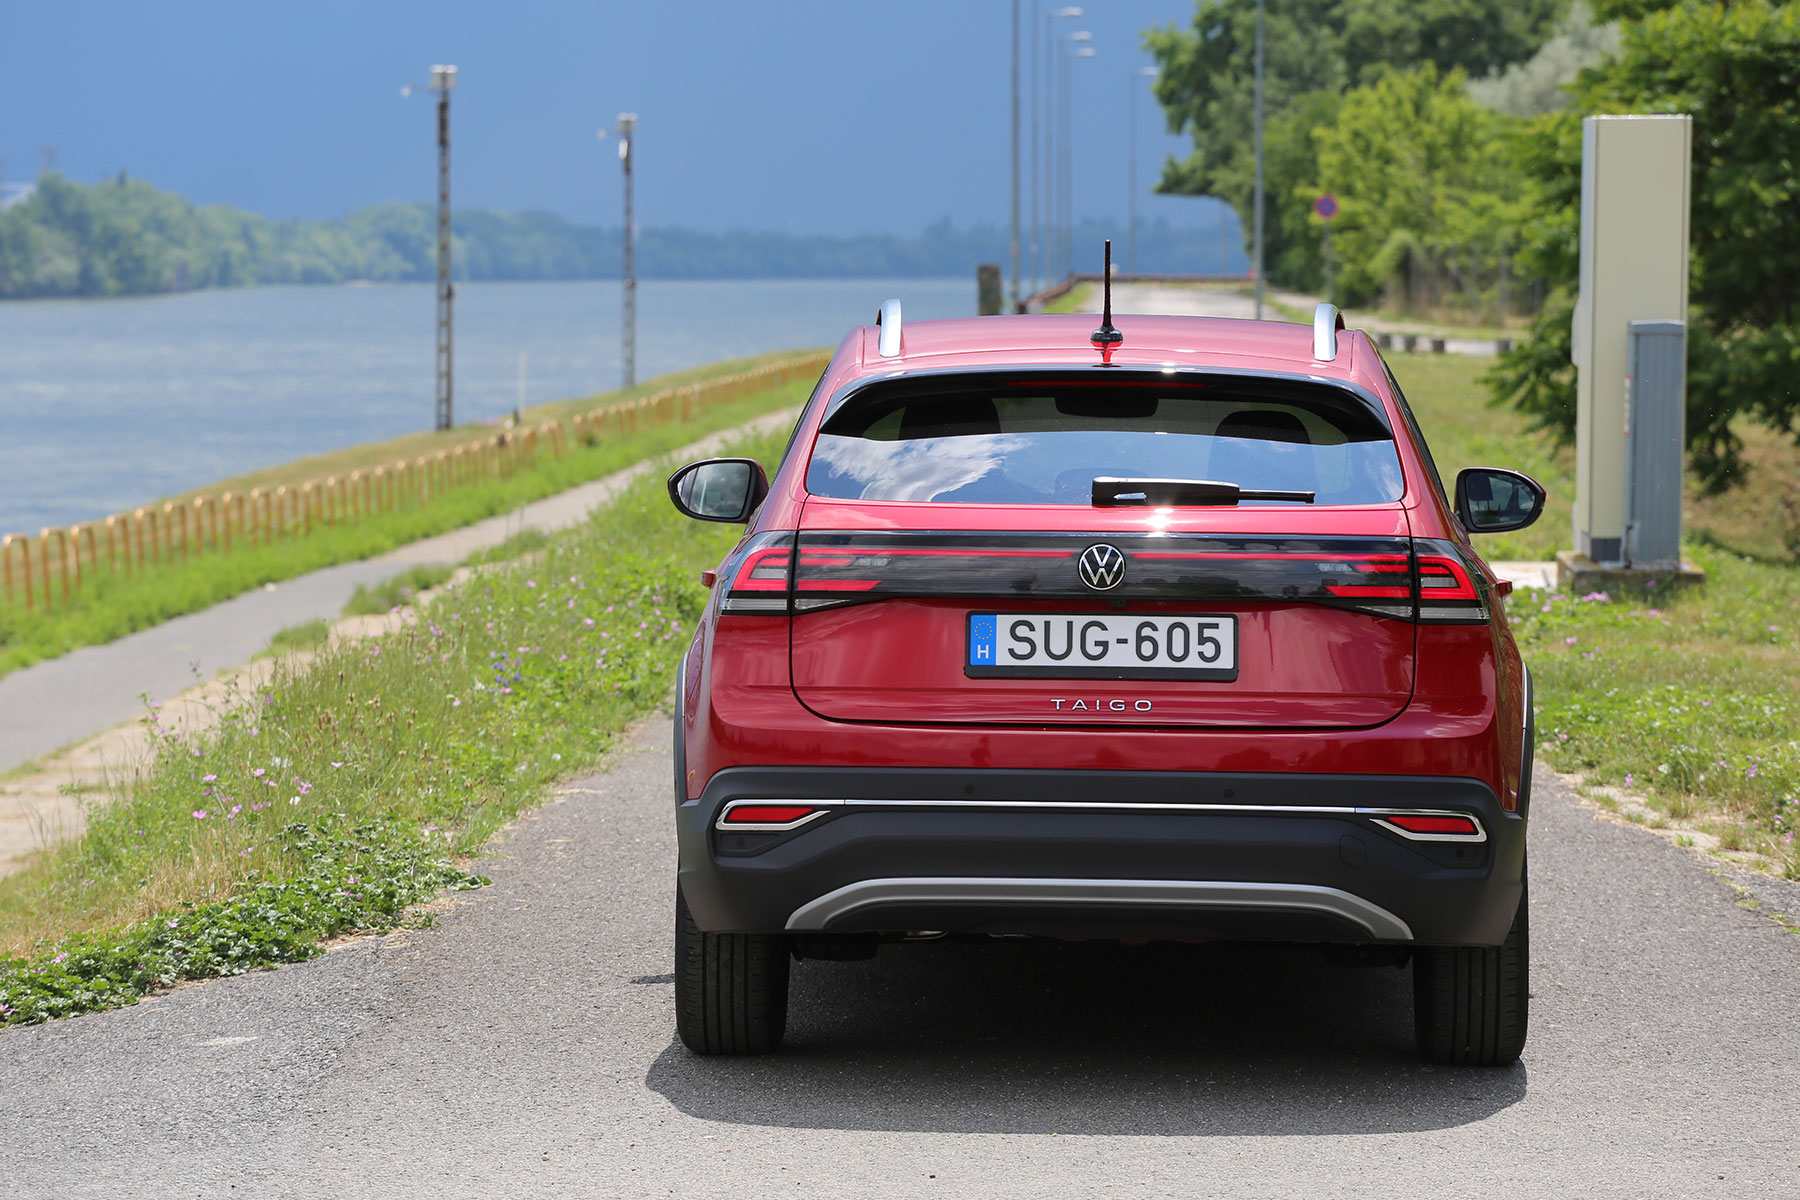 Rizikós autót hoz Magyarországra a Volkswagen 13